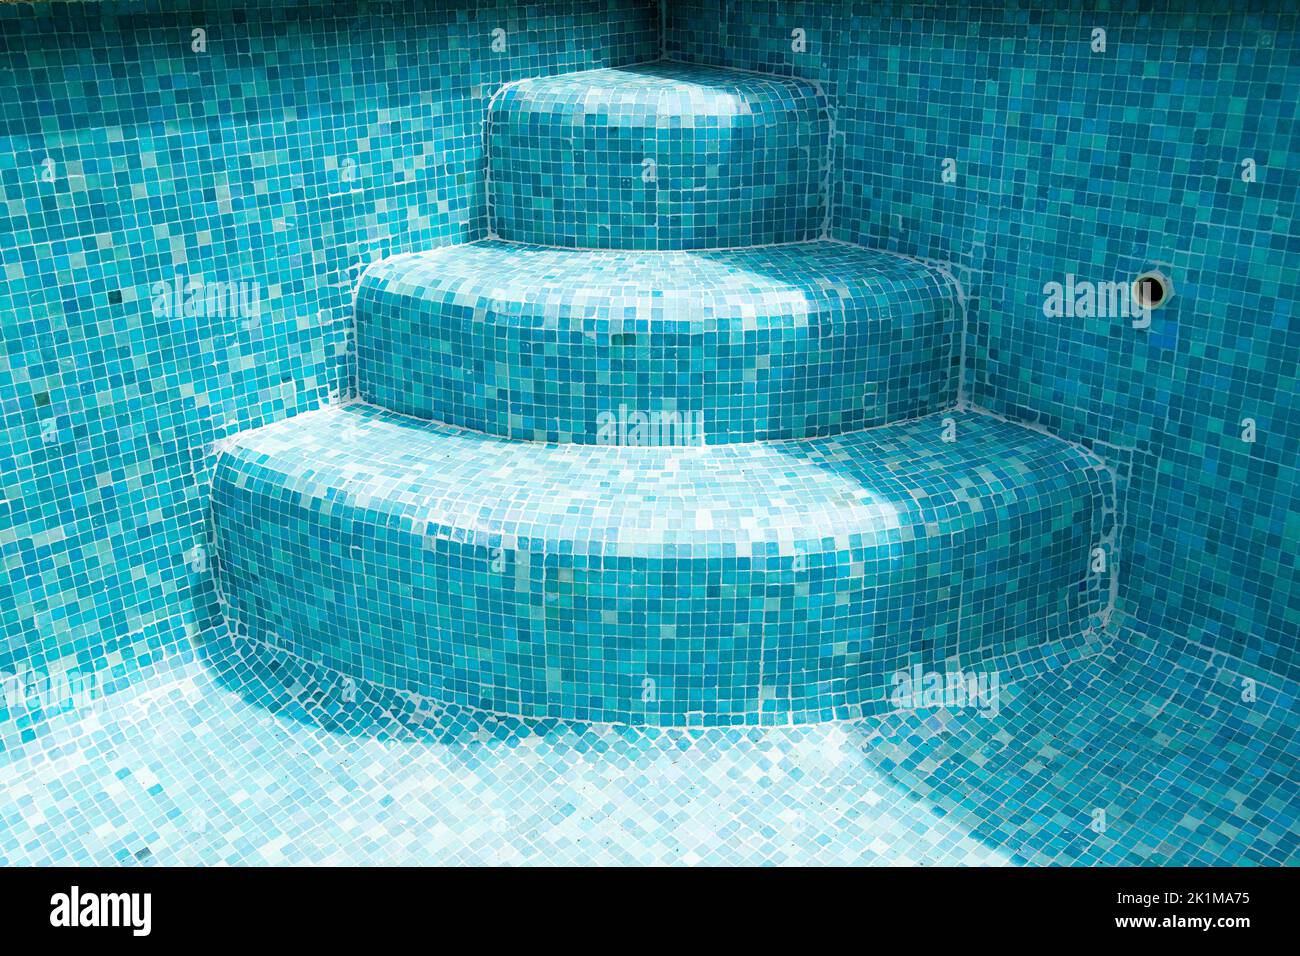 Der Pool ist eine Treppe in einen leeren Mosaikpool Stockfoto